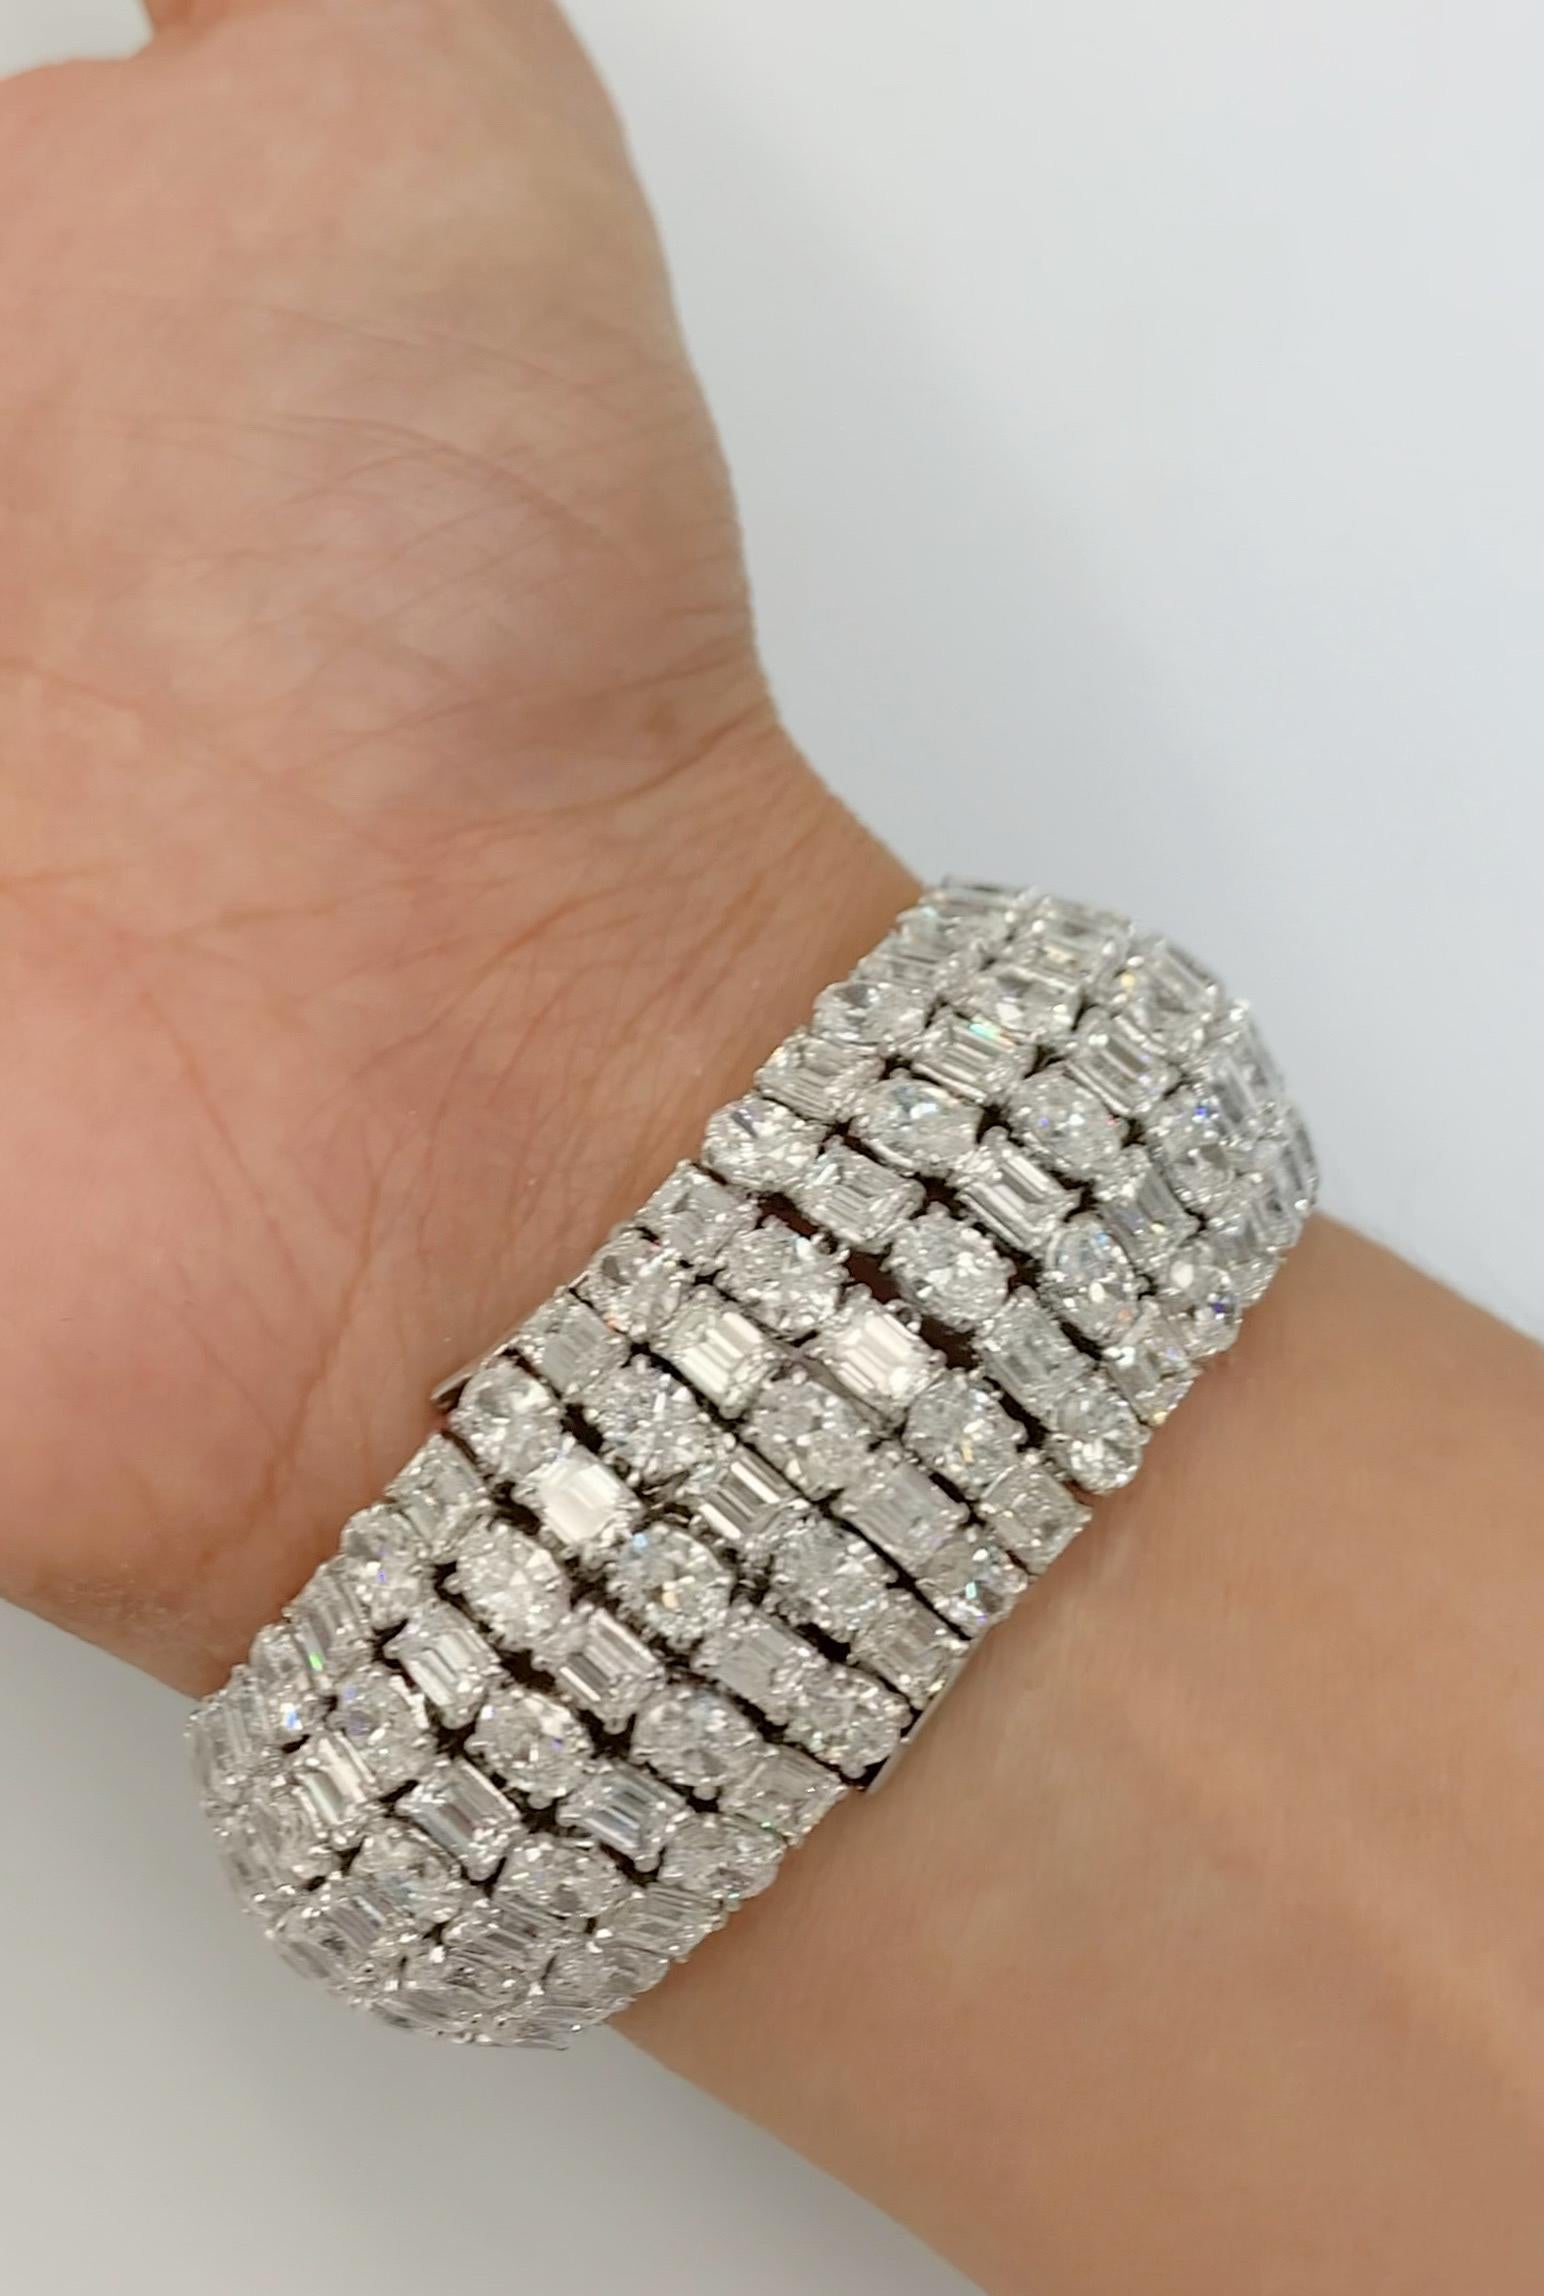 Emilio Jewelry Gia Certified 65.00 Carat Oval Emerald Cut Diamond Bracelet  For Sale 2